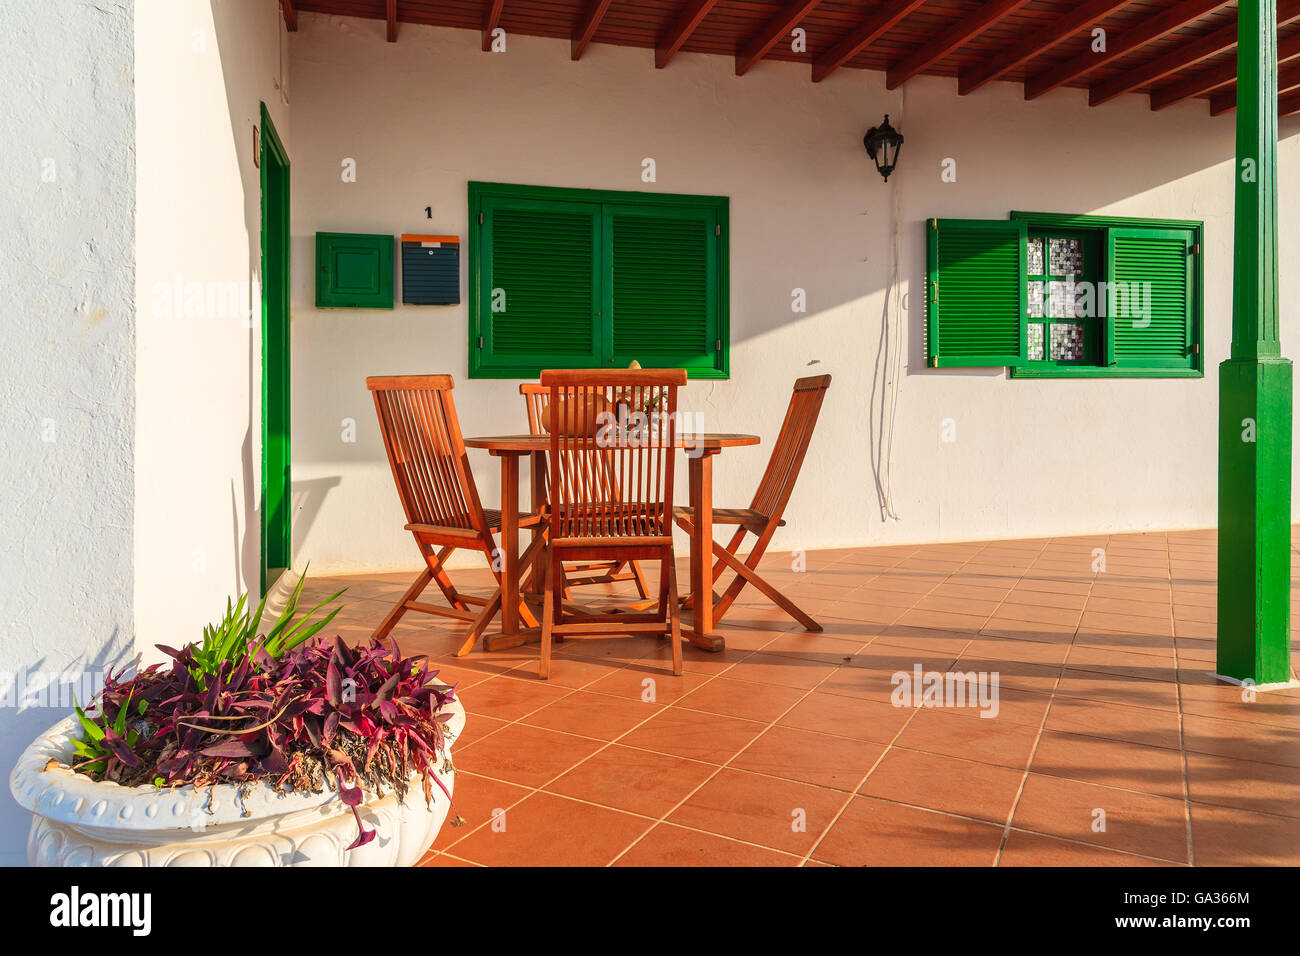 Insel LANZAROTE, Spanien - 15. Januar 2015: Innenhof des typischen weißen Haus mit grünen Türen und Fenstern in Las Brenas Dorf. Insel Lanzarote ist beliebter Ort um Wohnimmobilien Ferienimmobilien zu kaufen. Stockfoto